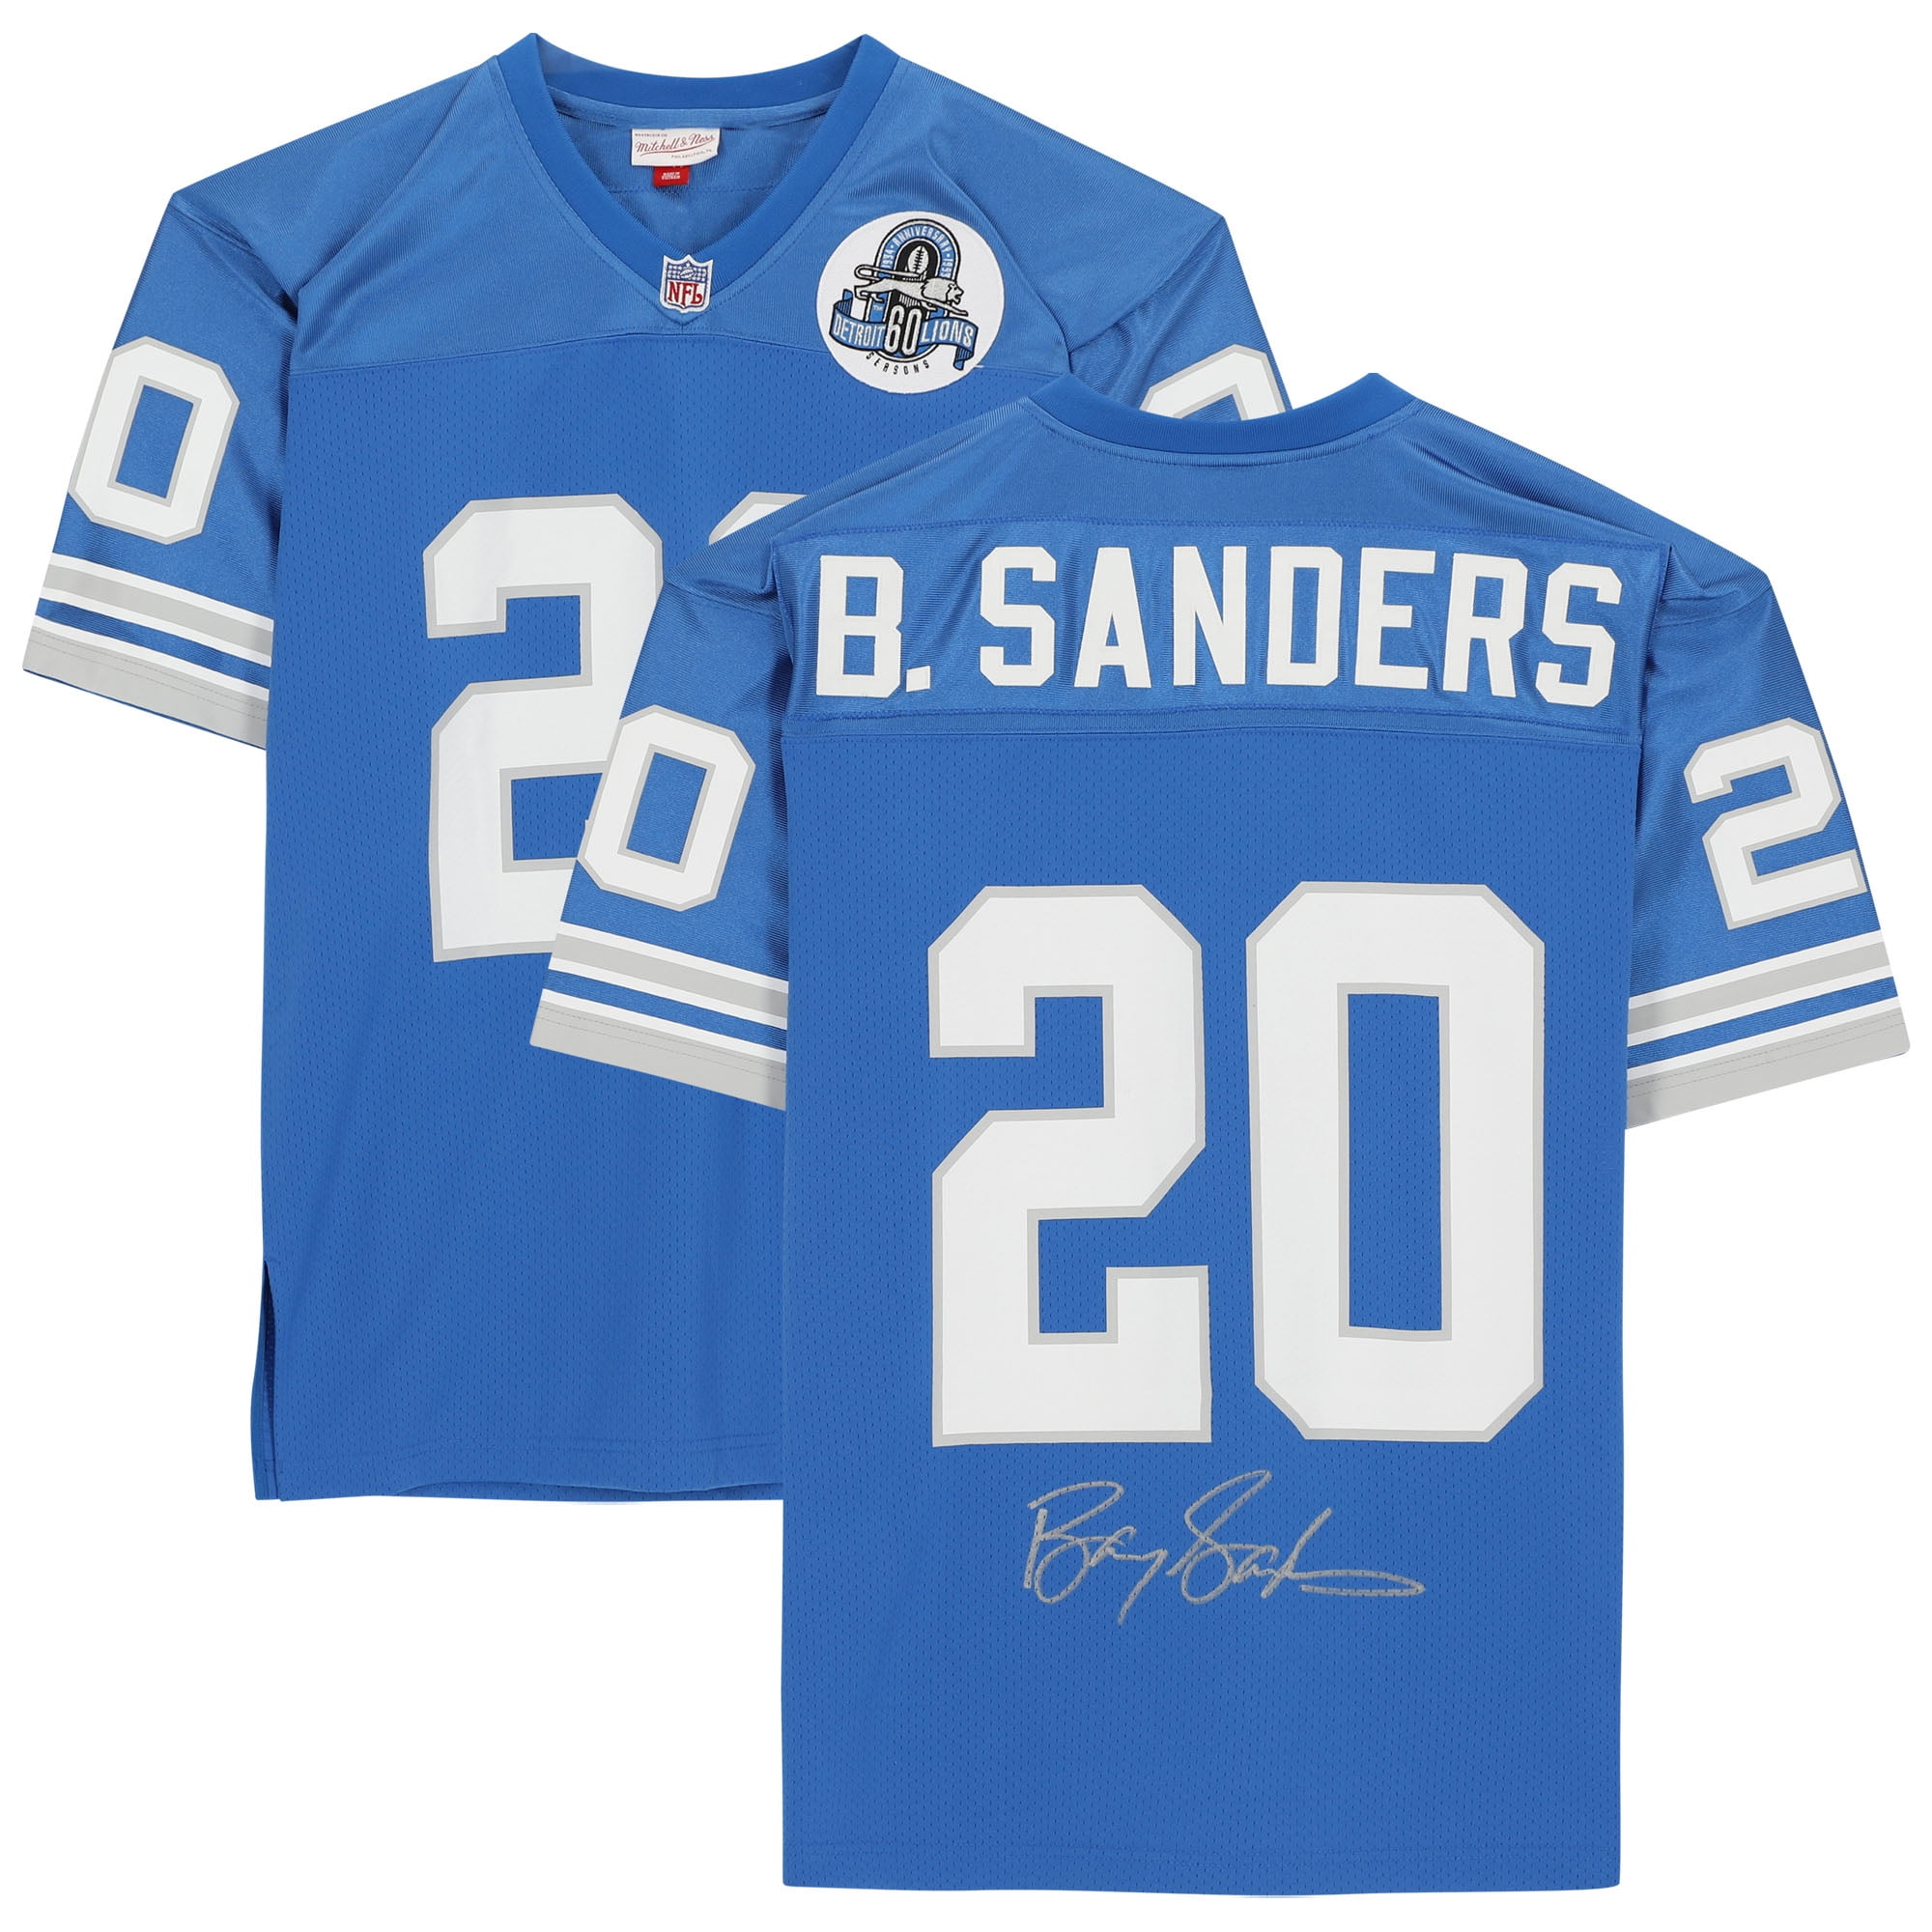 Barry Sanders Detroit Lions Autographed Light Blue Mitchell & Ness